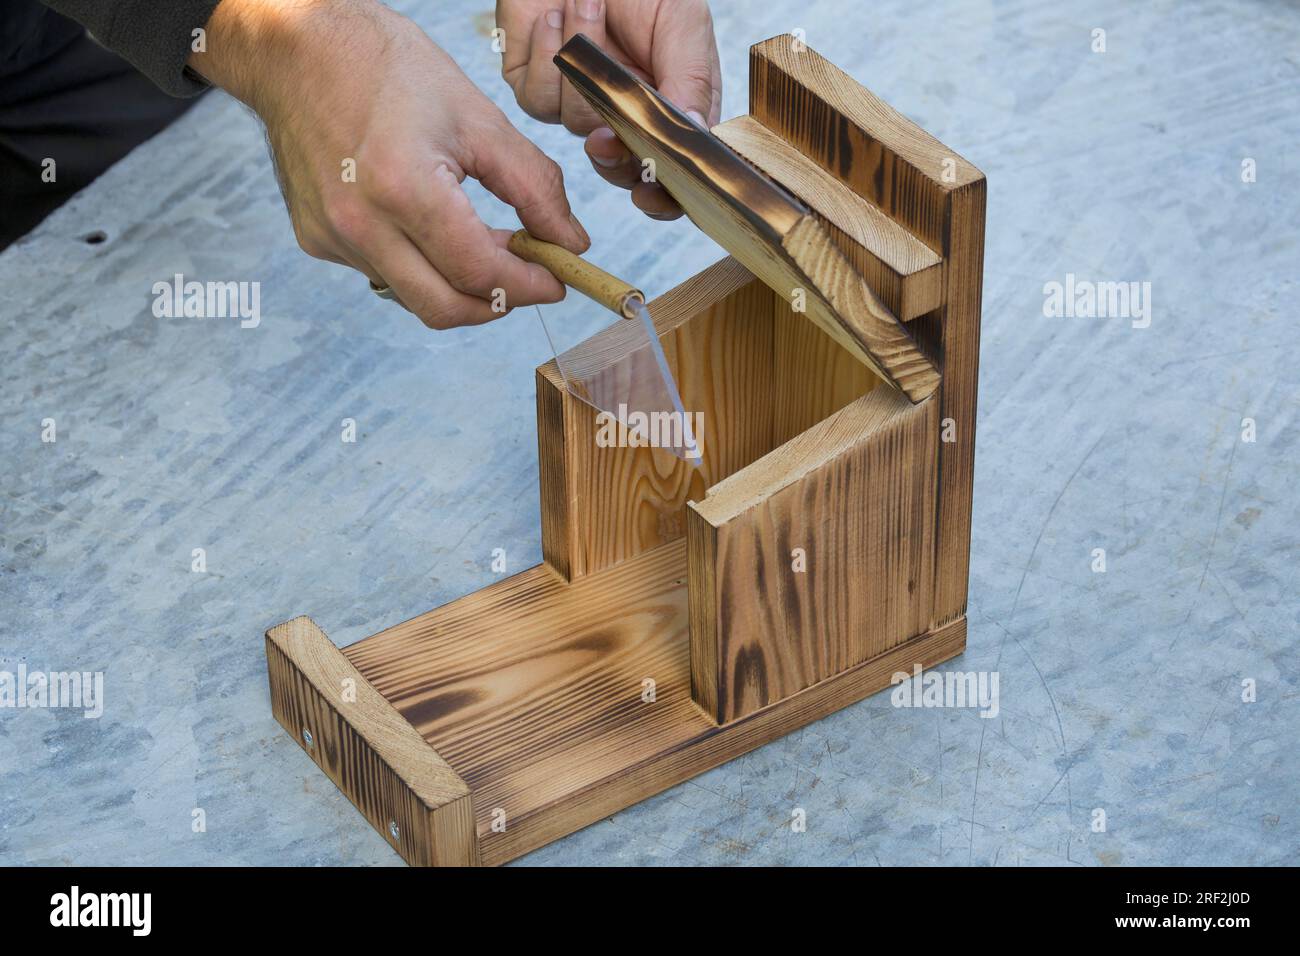 fabrication d'une mangeoire pour les écureuils, étape 11 : le bouclier en plexiglas est fixe, image de série 11/13 Banque D'Images